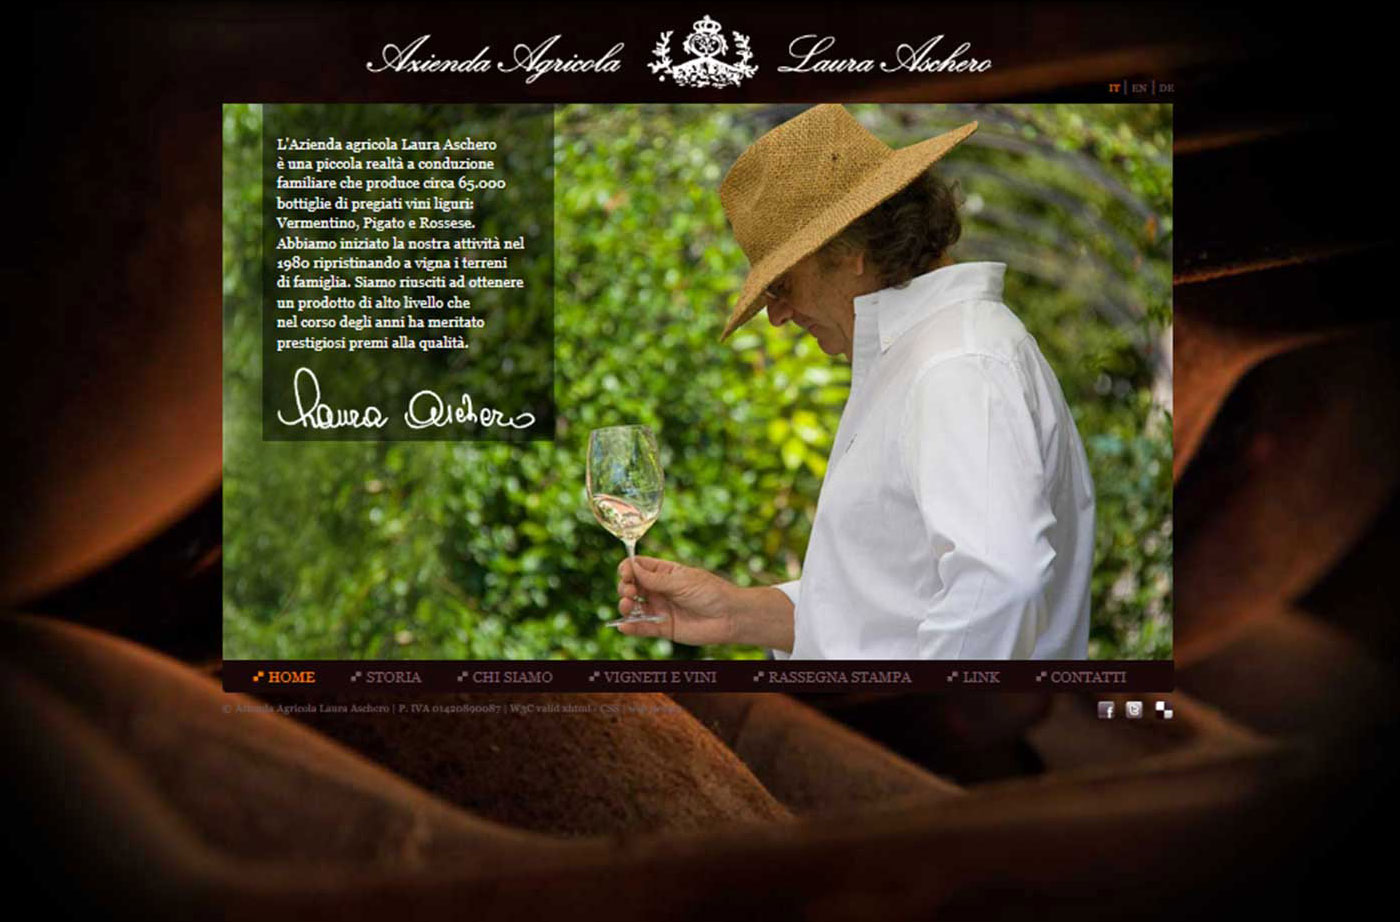 Azienda Agricola Laura Aschero website